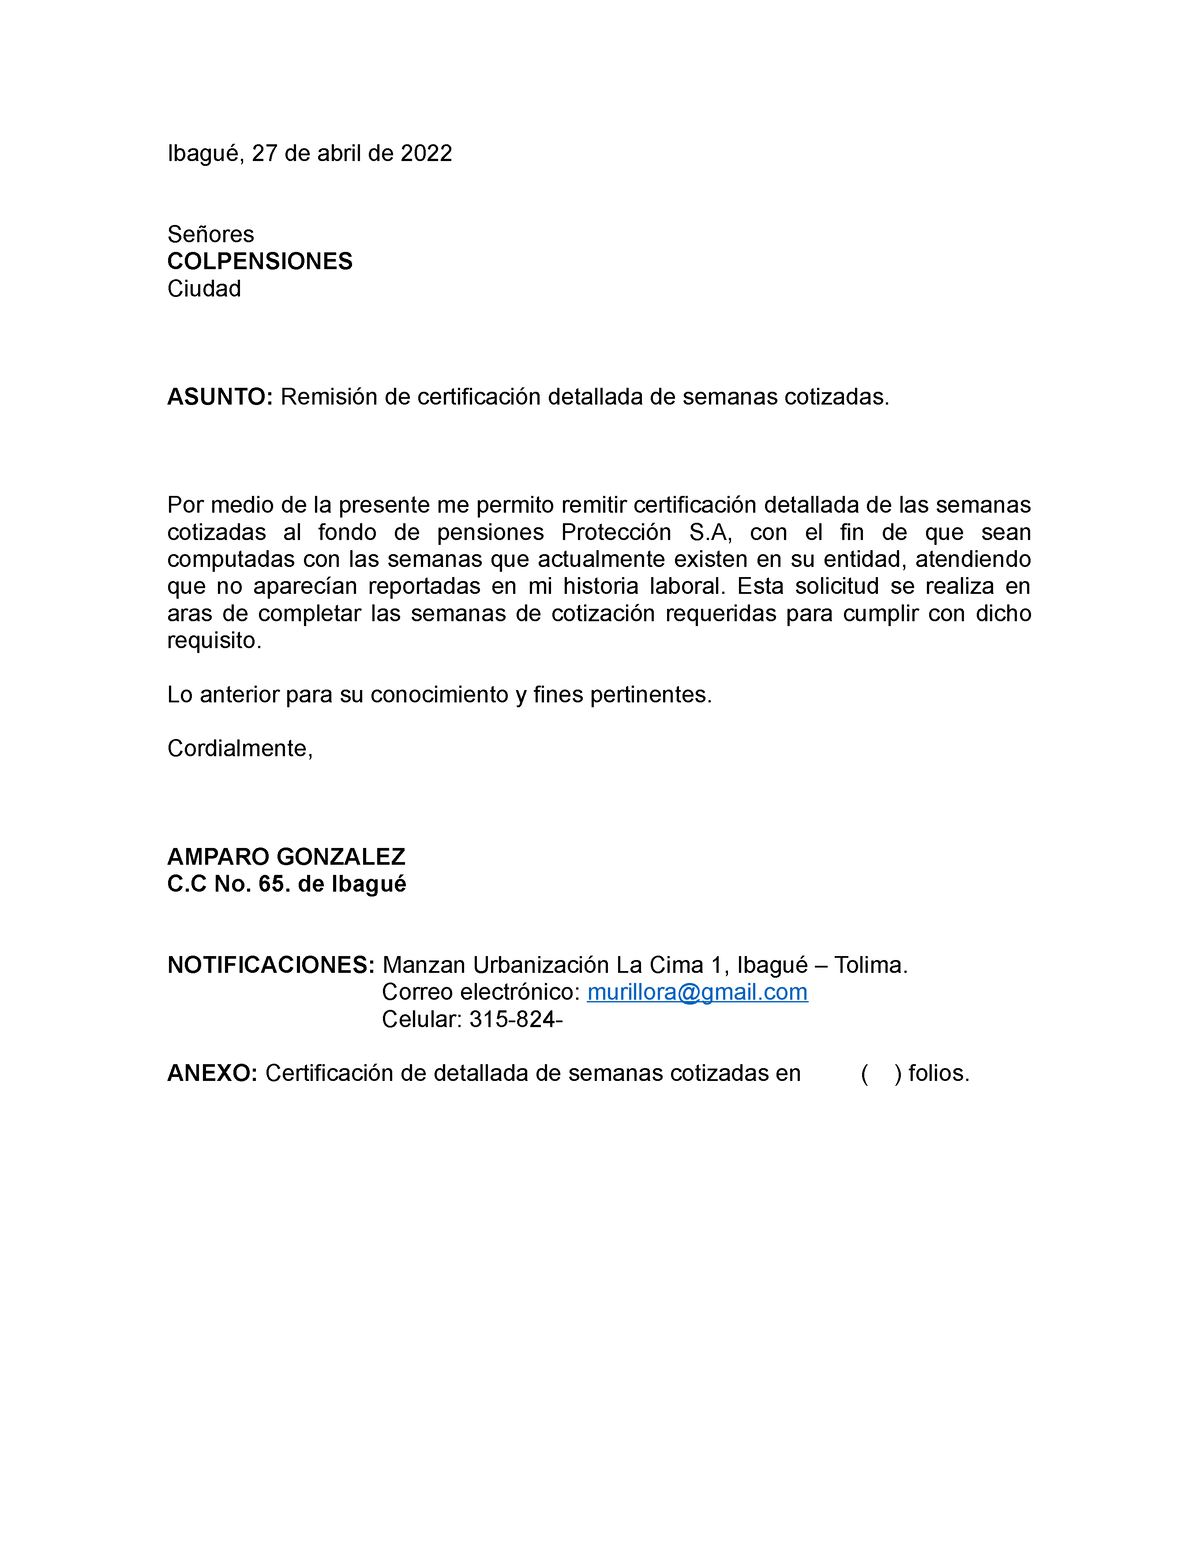 Oficio Colpensiones - SOLICITUD PARA COMPUTAR SEMANAS COTIZADAS DE  PENSIONES - Ibagué, 27 de abril - Studocu